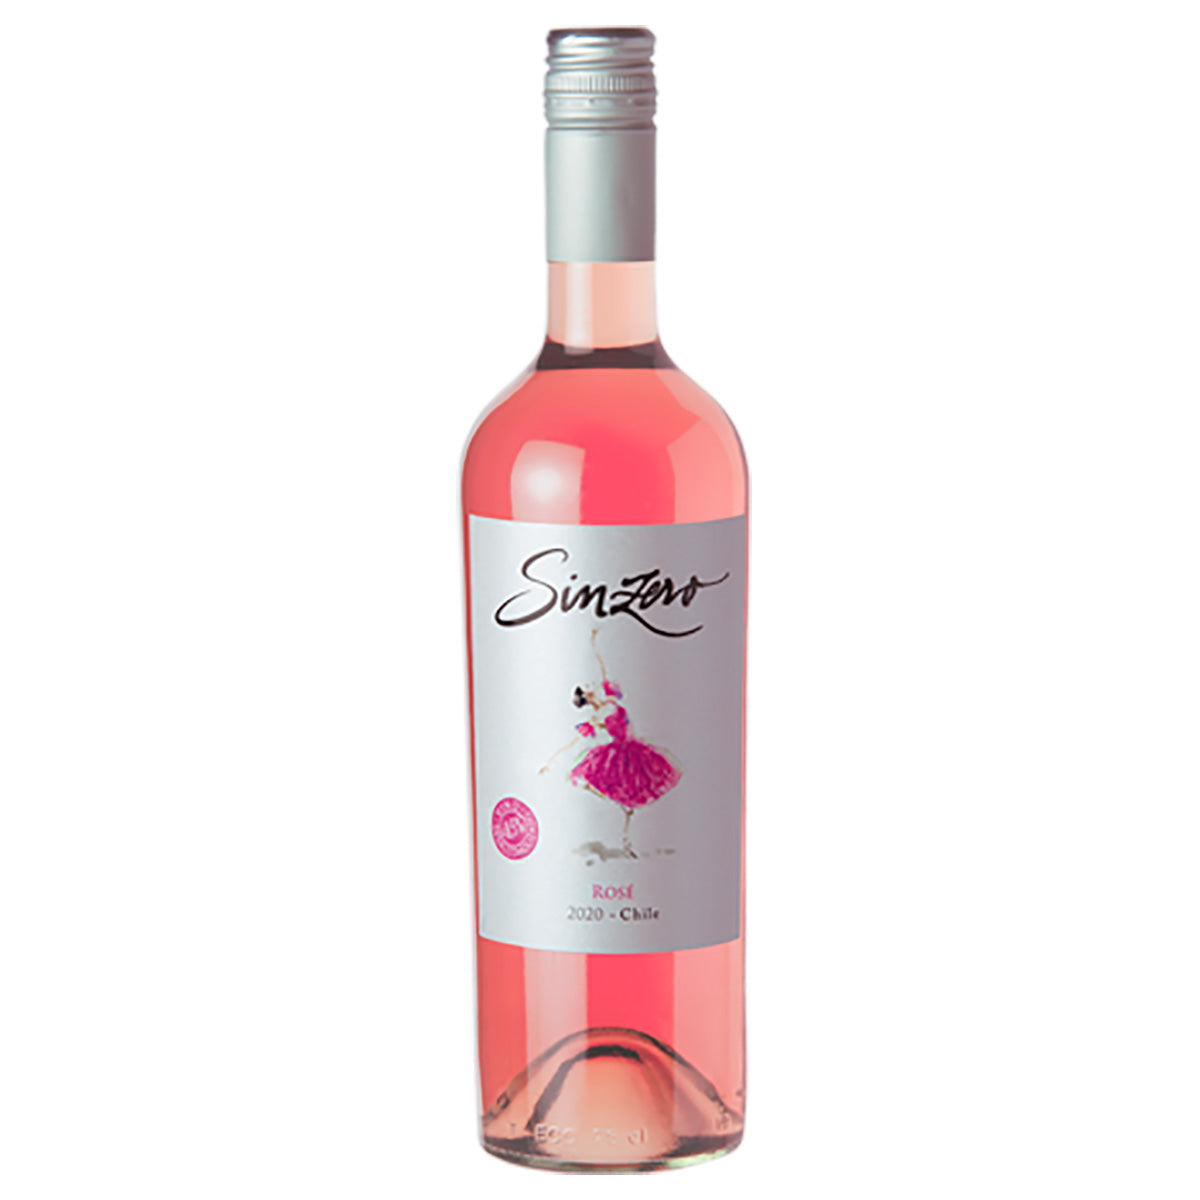 Sinzero Chilean - Non Alcoholic Rose Wine - Includes Premium White Gift Box